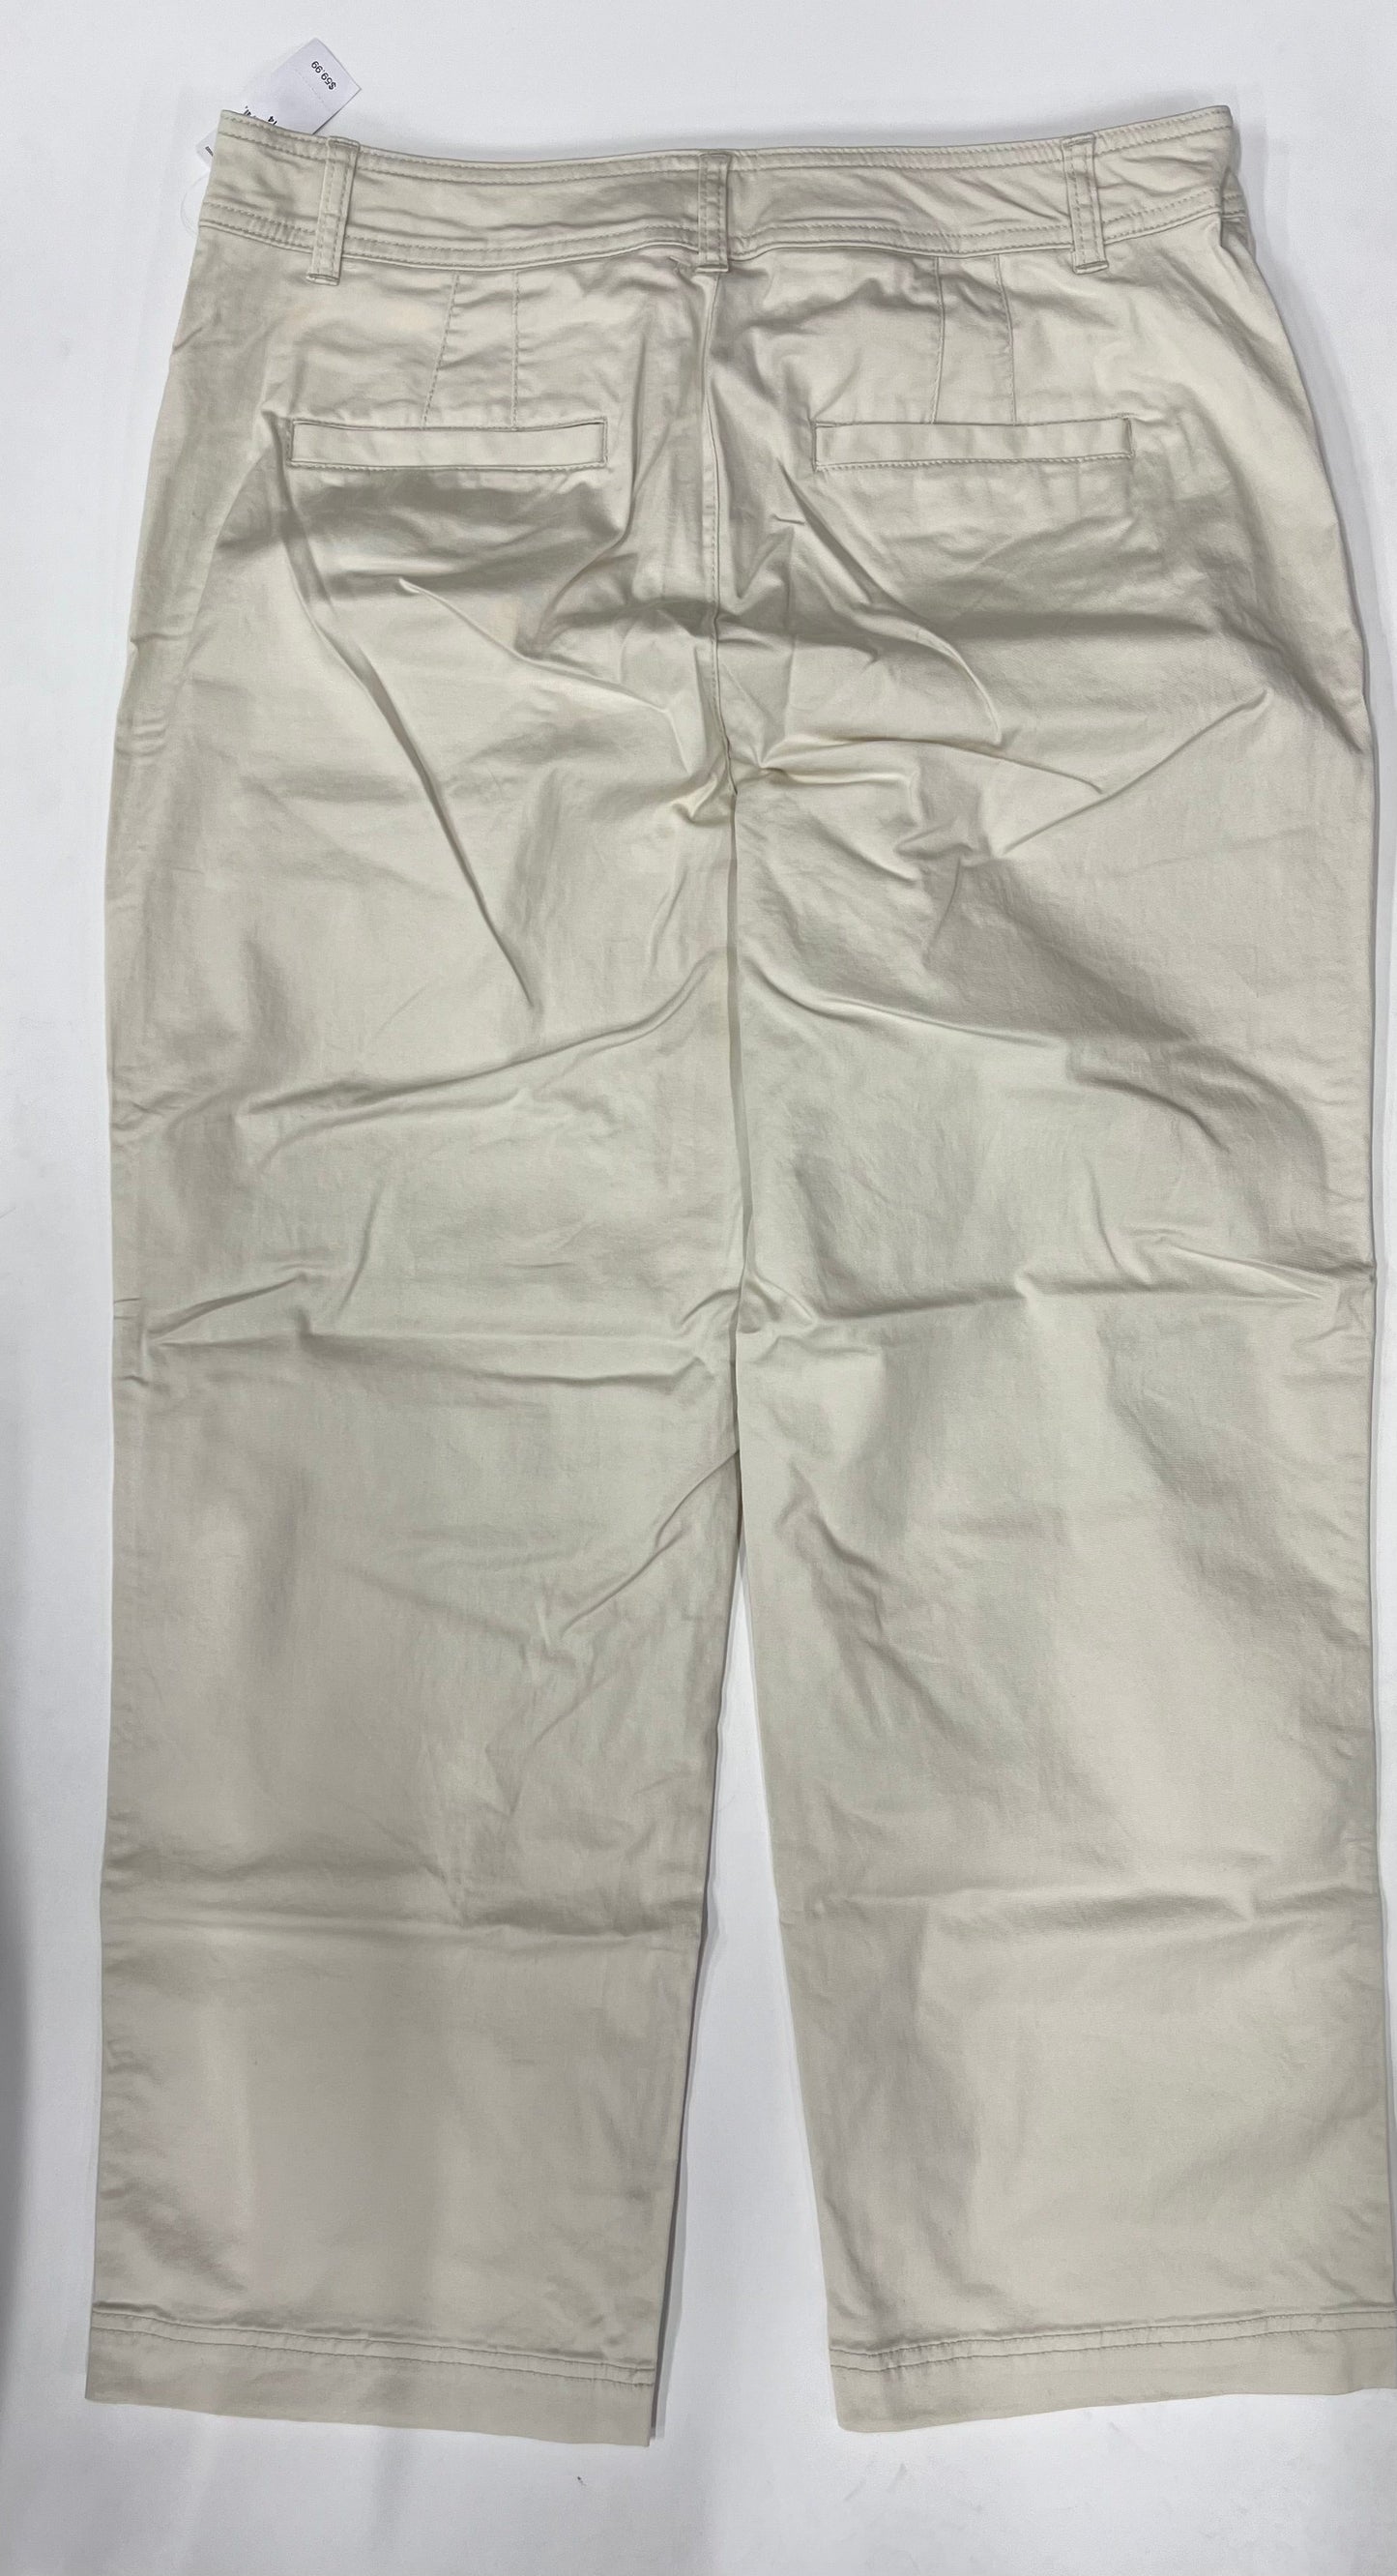 Pants Work/dress By Gap NWT Size: 14